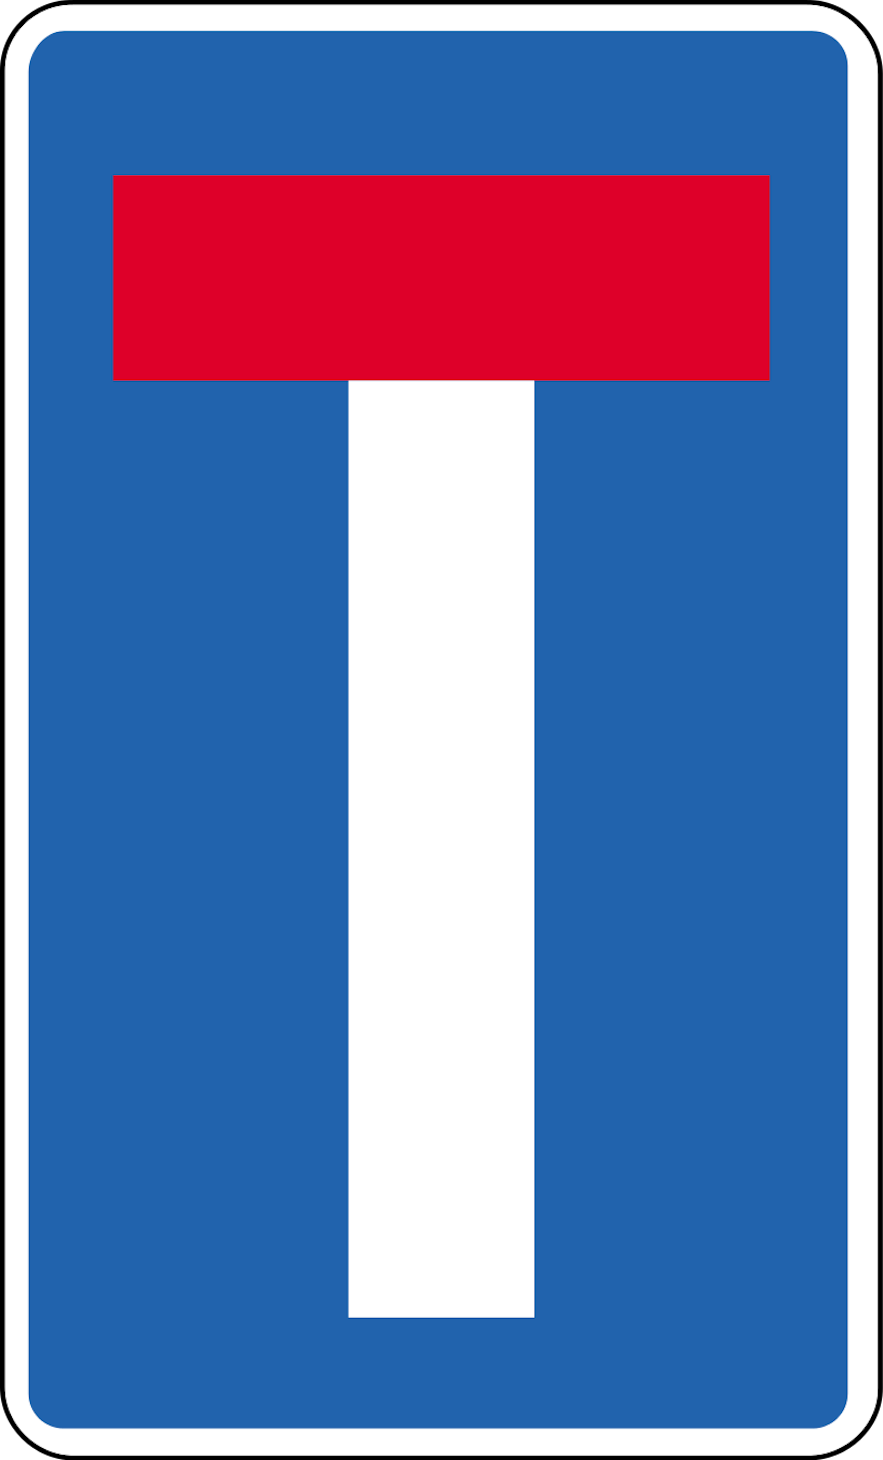 아이슬란드의 청색 직사각형 도로 표지판. 표지판 중앙에 적색과 백색으로 "T"자 모양을 기재해 두었으며, 전방에 막다른 길이 등장함을 뜻합니다.